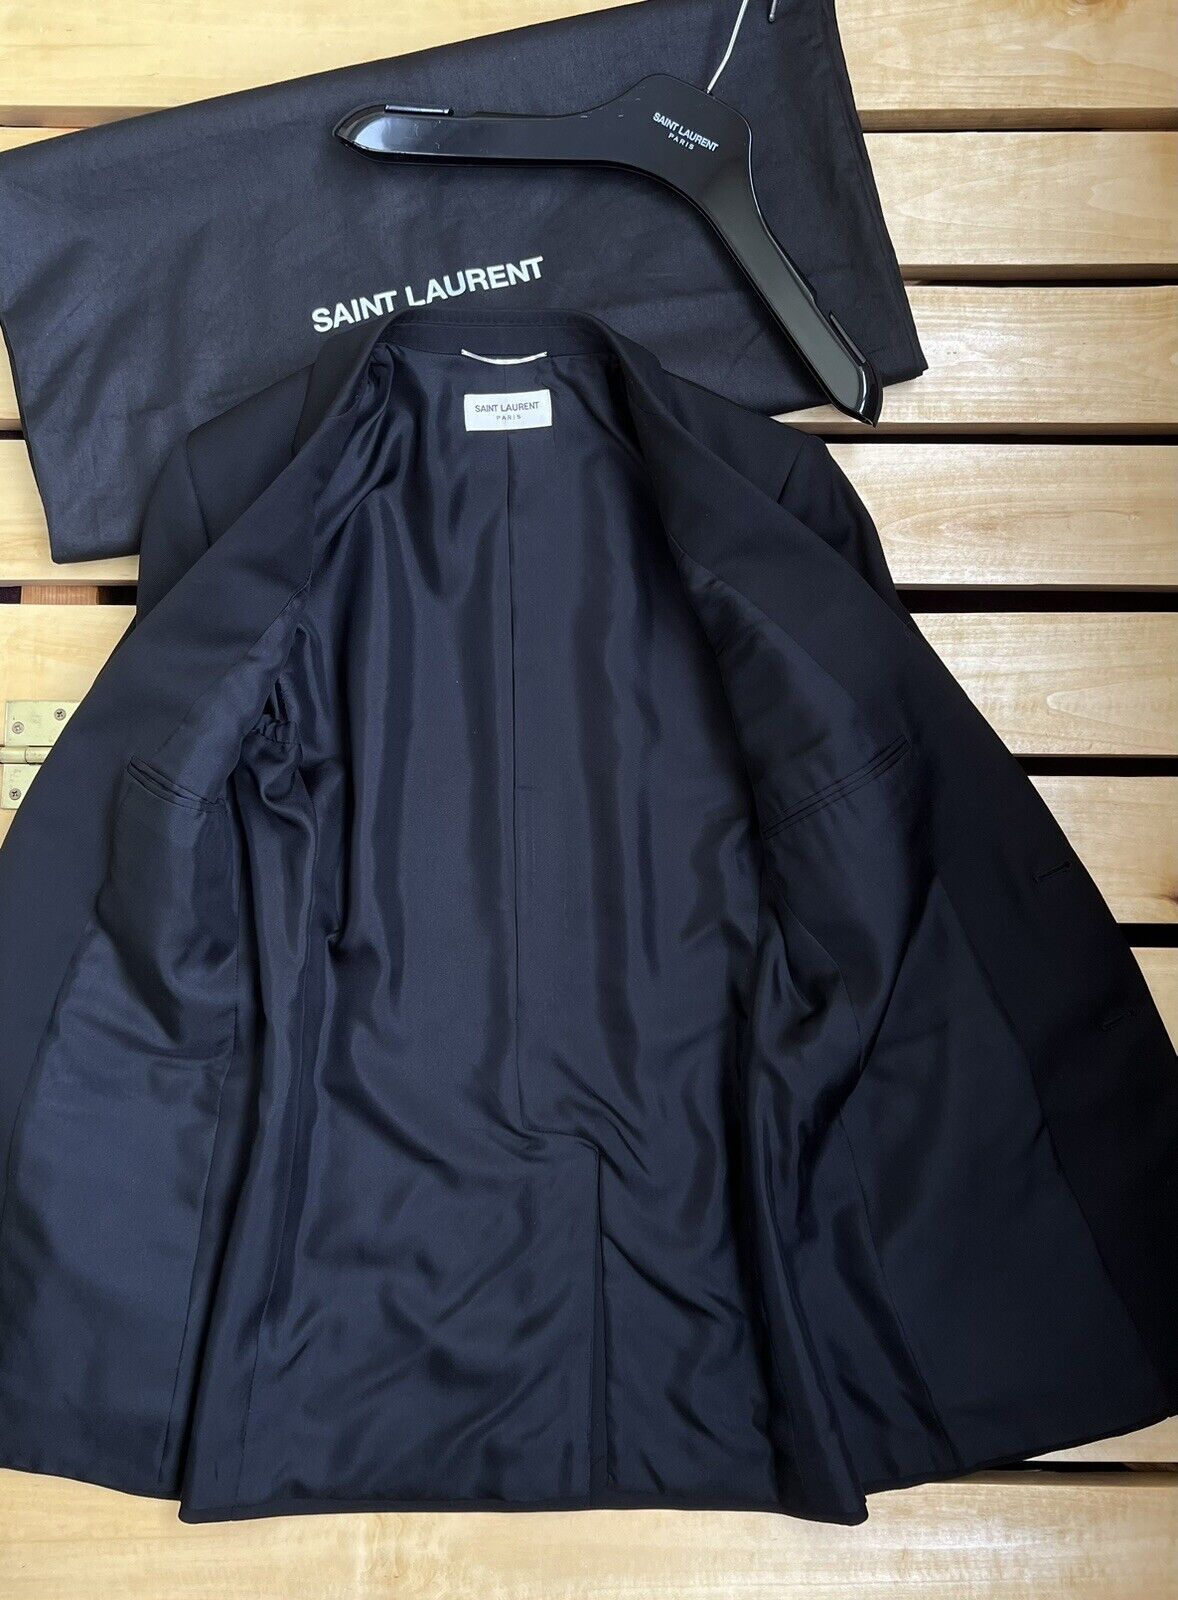 Saint Laurent Blazer Classic Suit Jacket Sz. 46  | eBay | eBay US